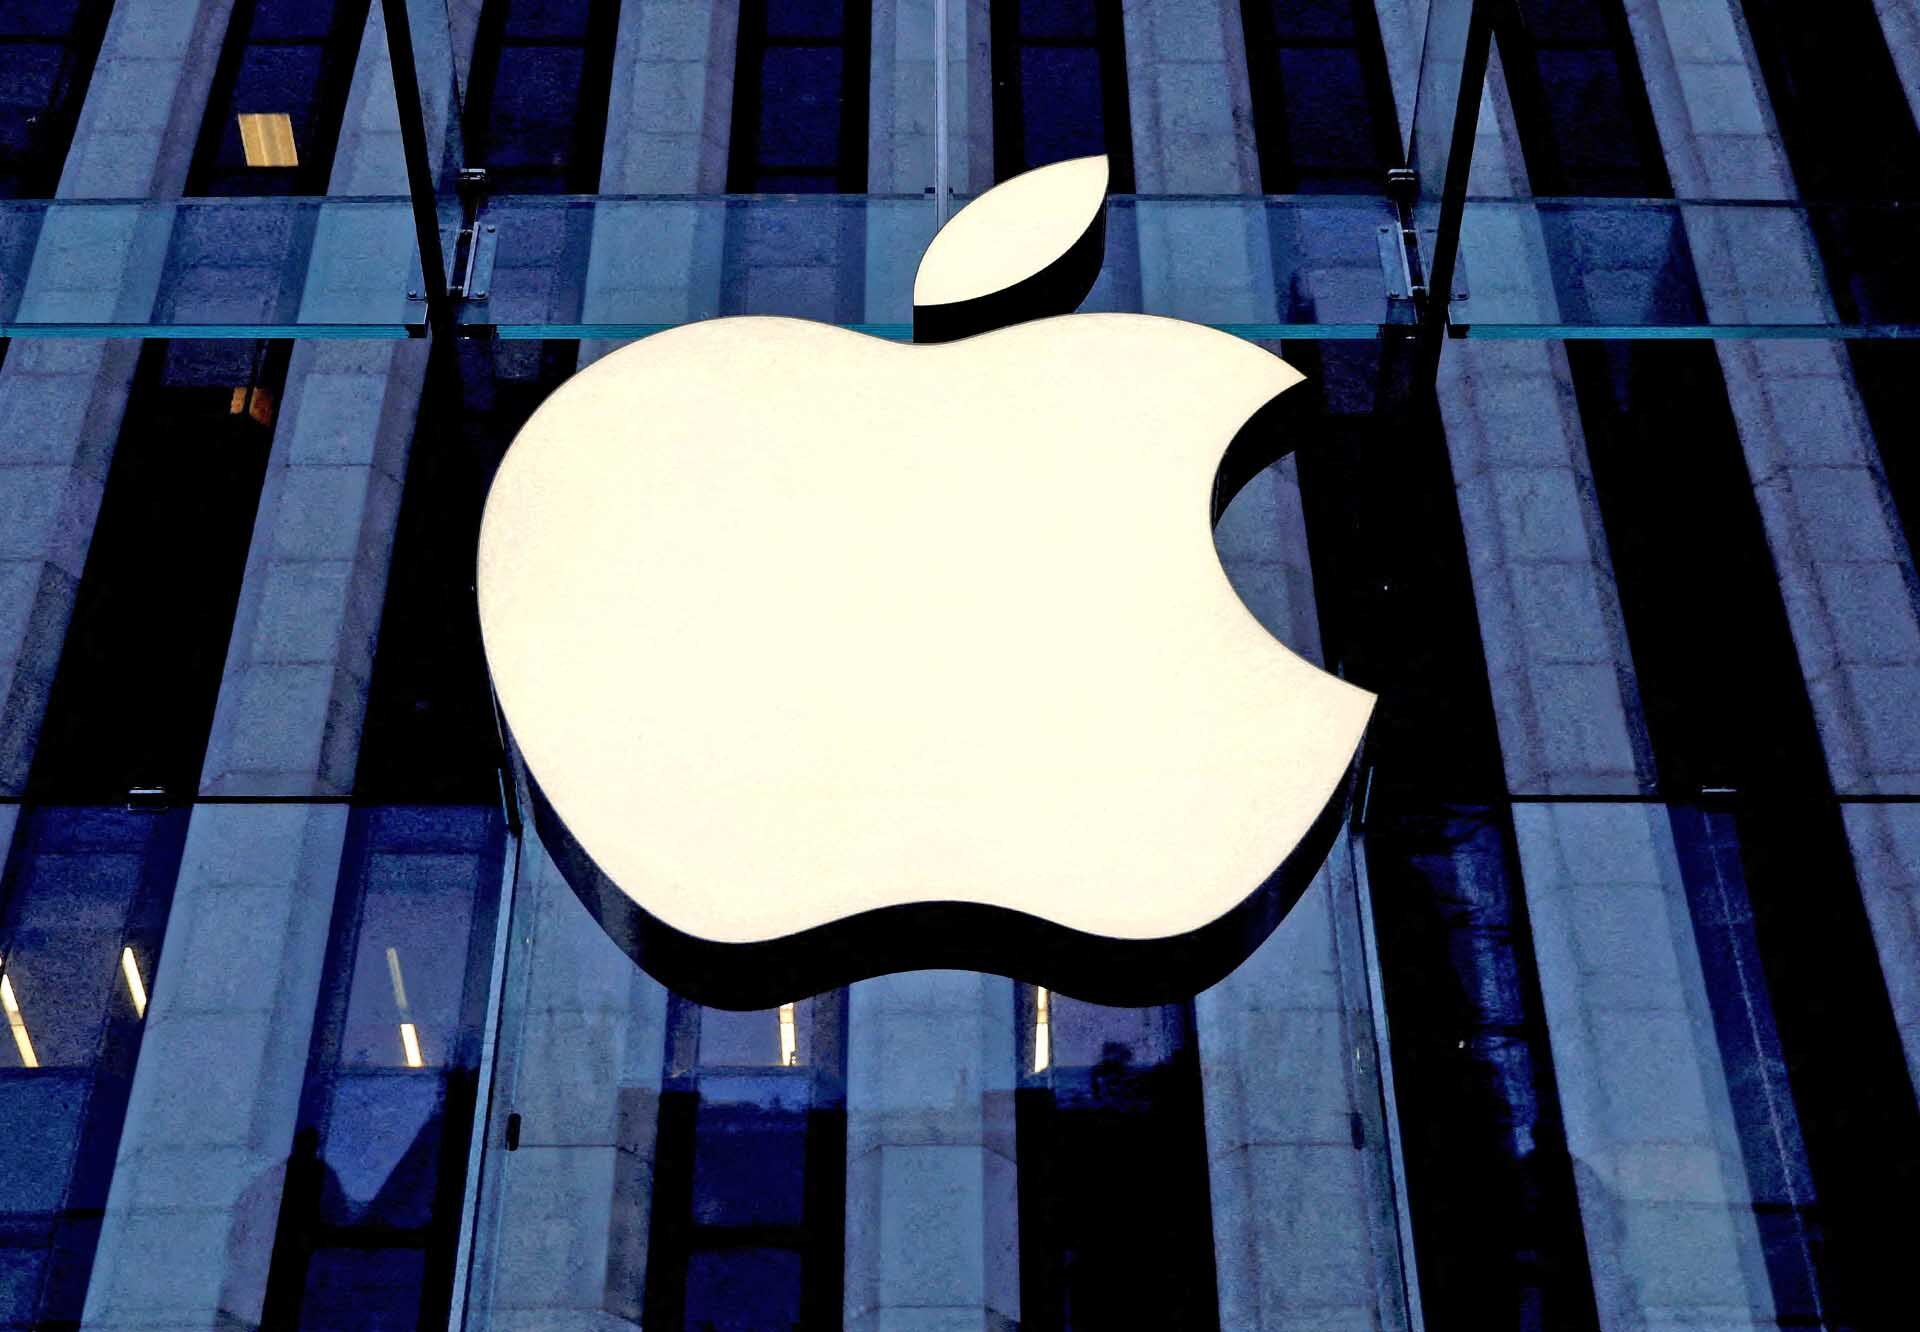 กระทรวงยุติธรรมสหรัฐ “ยื่นฟ้องแอปเปิล” กรณี “ไอโฟน” ผูกขาดตลาดมือถือ